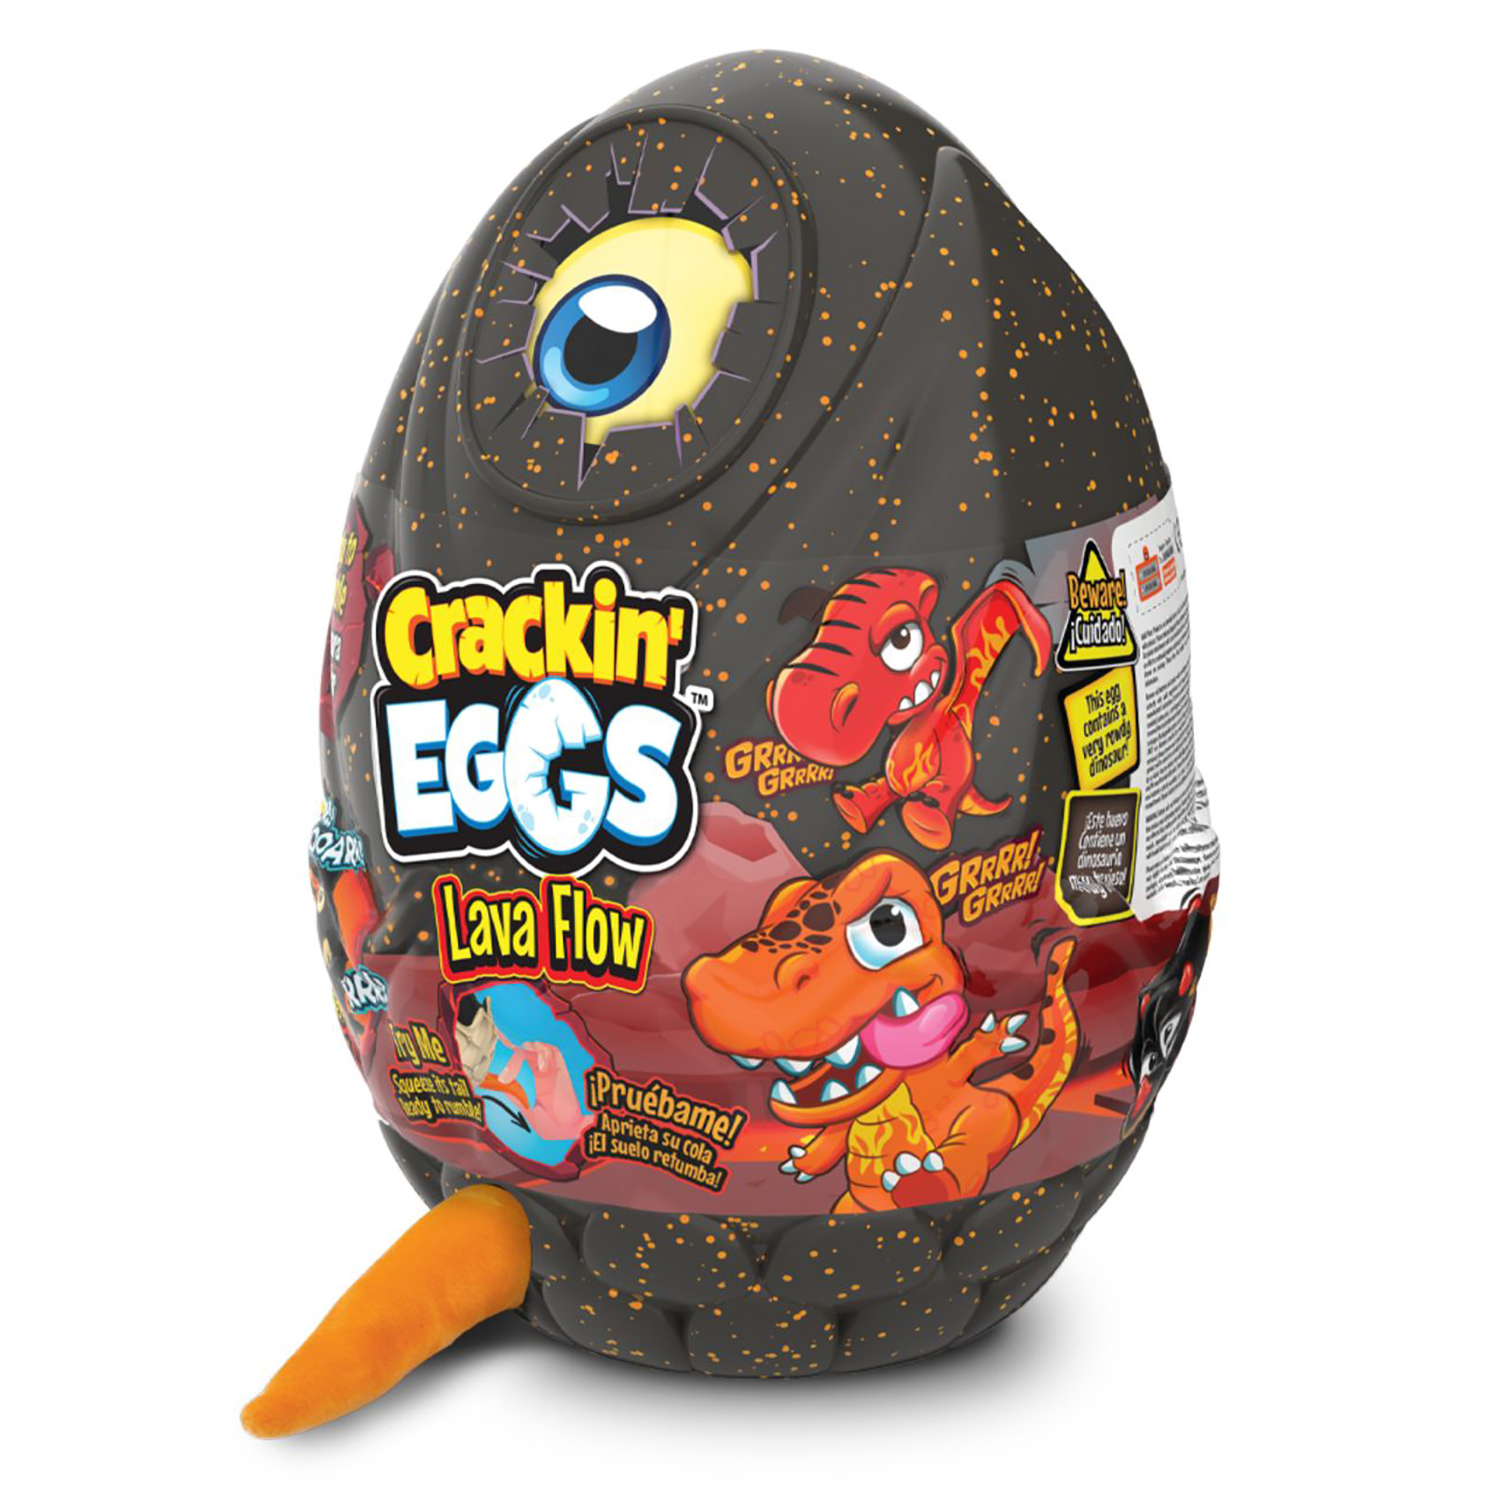 Мягкая игрушка Crackin' Eggs Динозавр оранжевый в яйце, серия Лава, 22 см полиротанг trevo серия lider 6 мм 100 м волна оранжевый